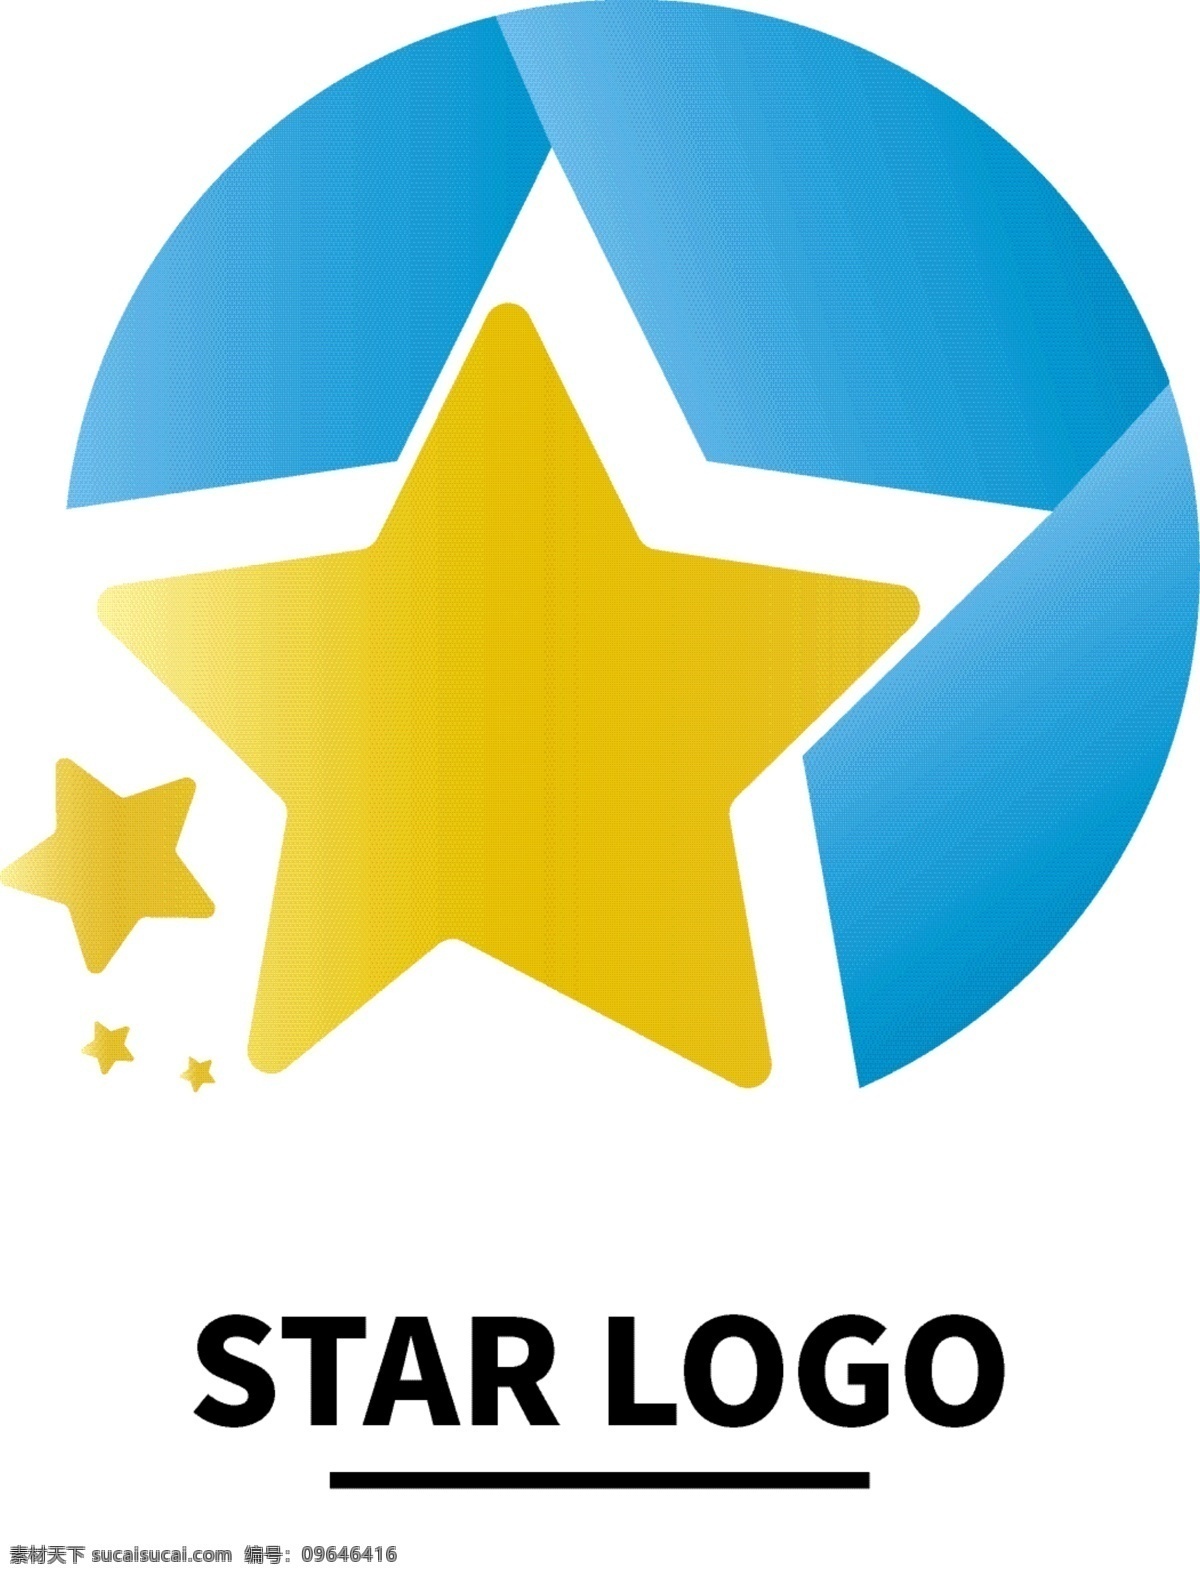 创意 高端 渐变 星星 logo logo设计 黄色logo 蓝色logo 教育培训 logo贴图 标志设计 星型 五角星 star